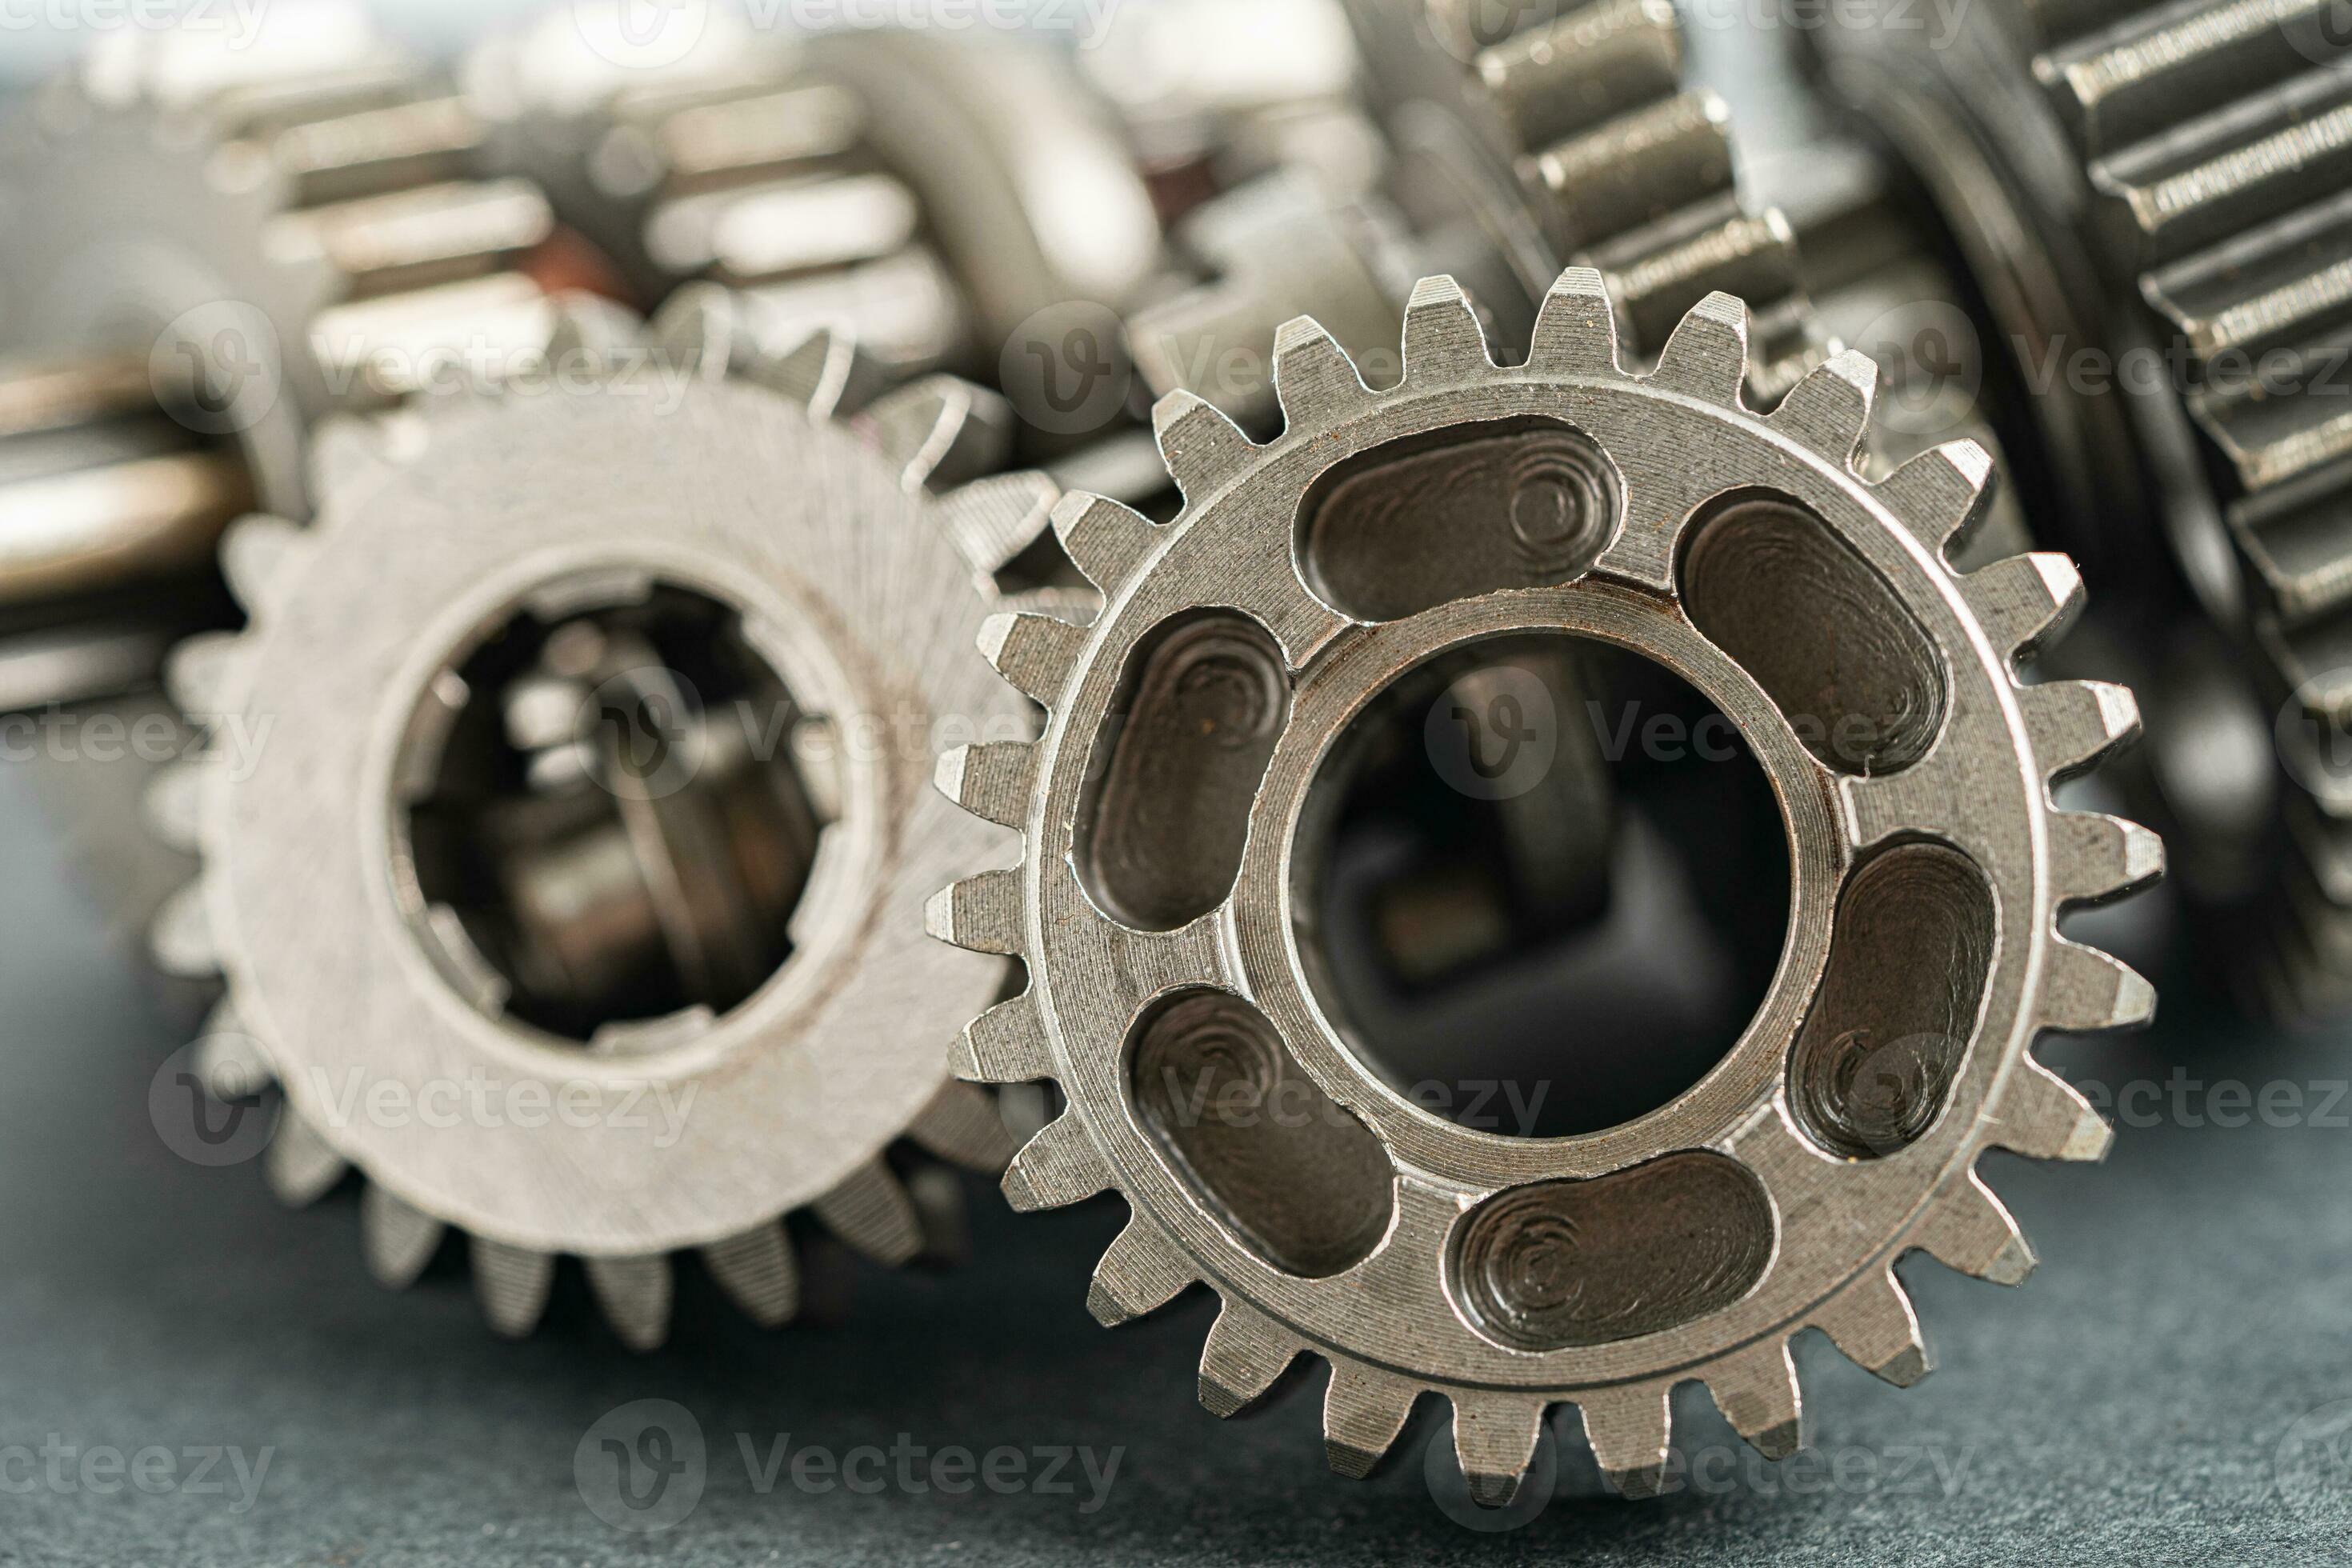 Ausrüstung und Zahnräder Räder, Uhr Mechanismus, Messing- Metall Motor  industriell. 25166495 Stock-Photo bei Vecteezy